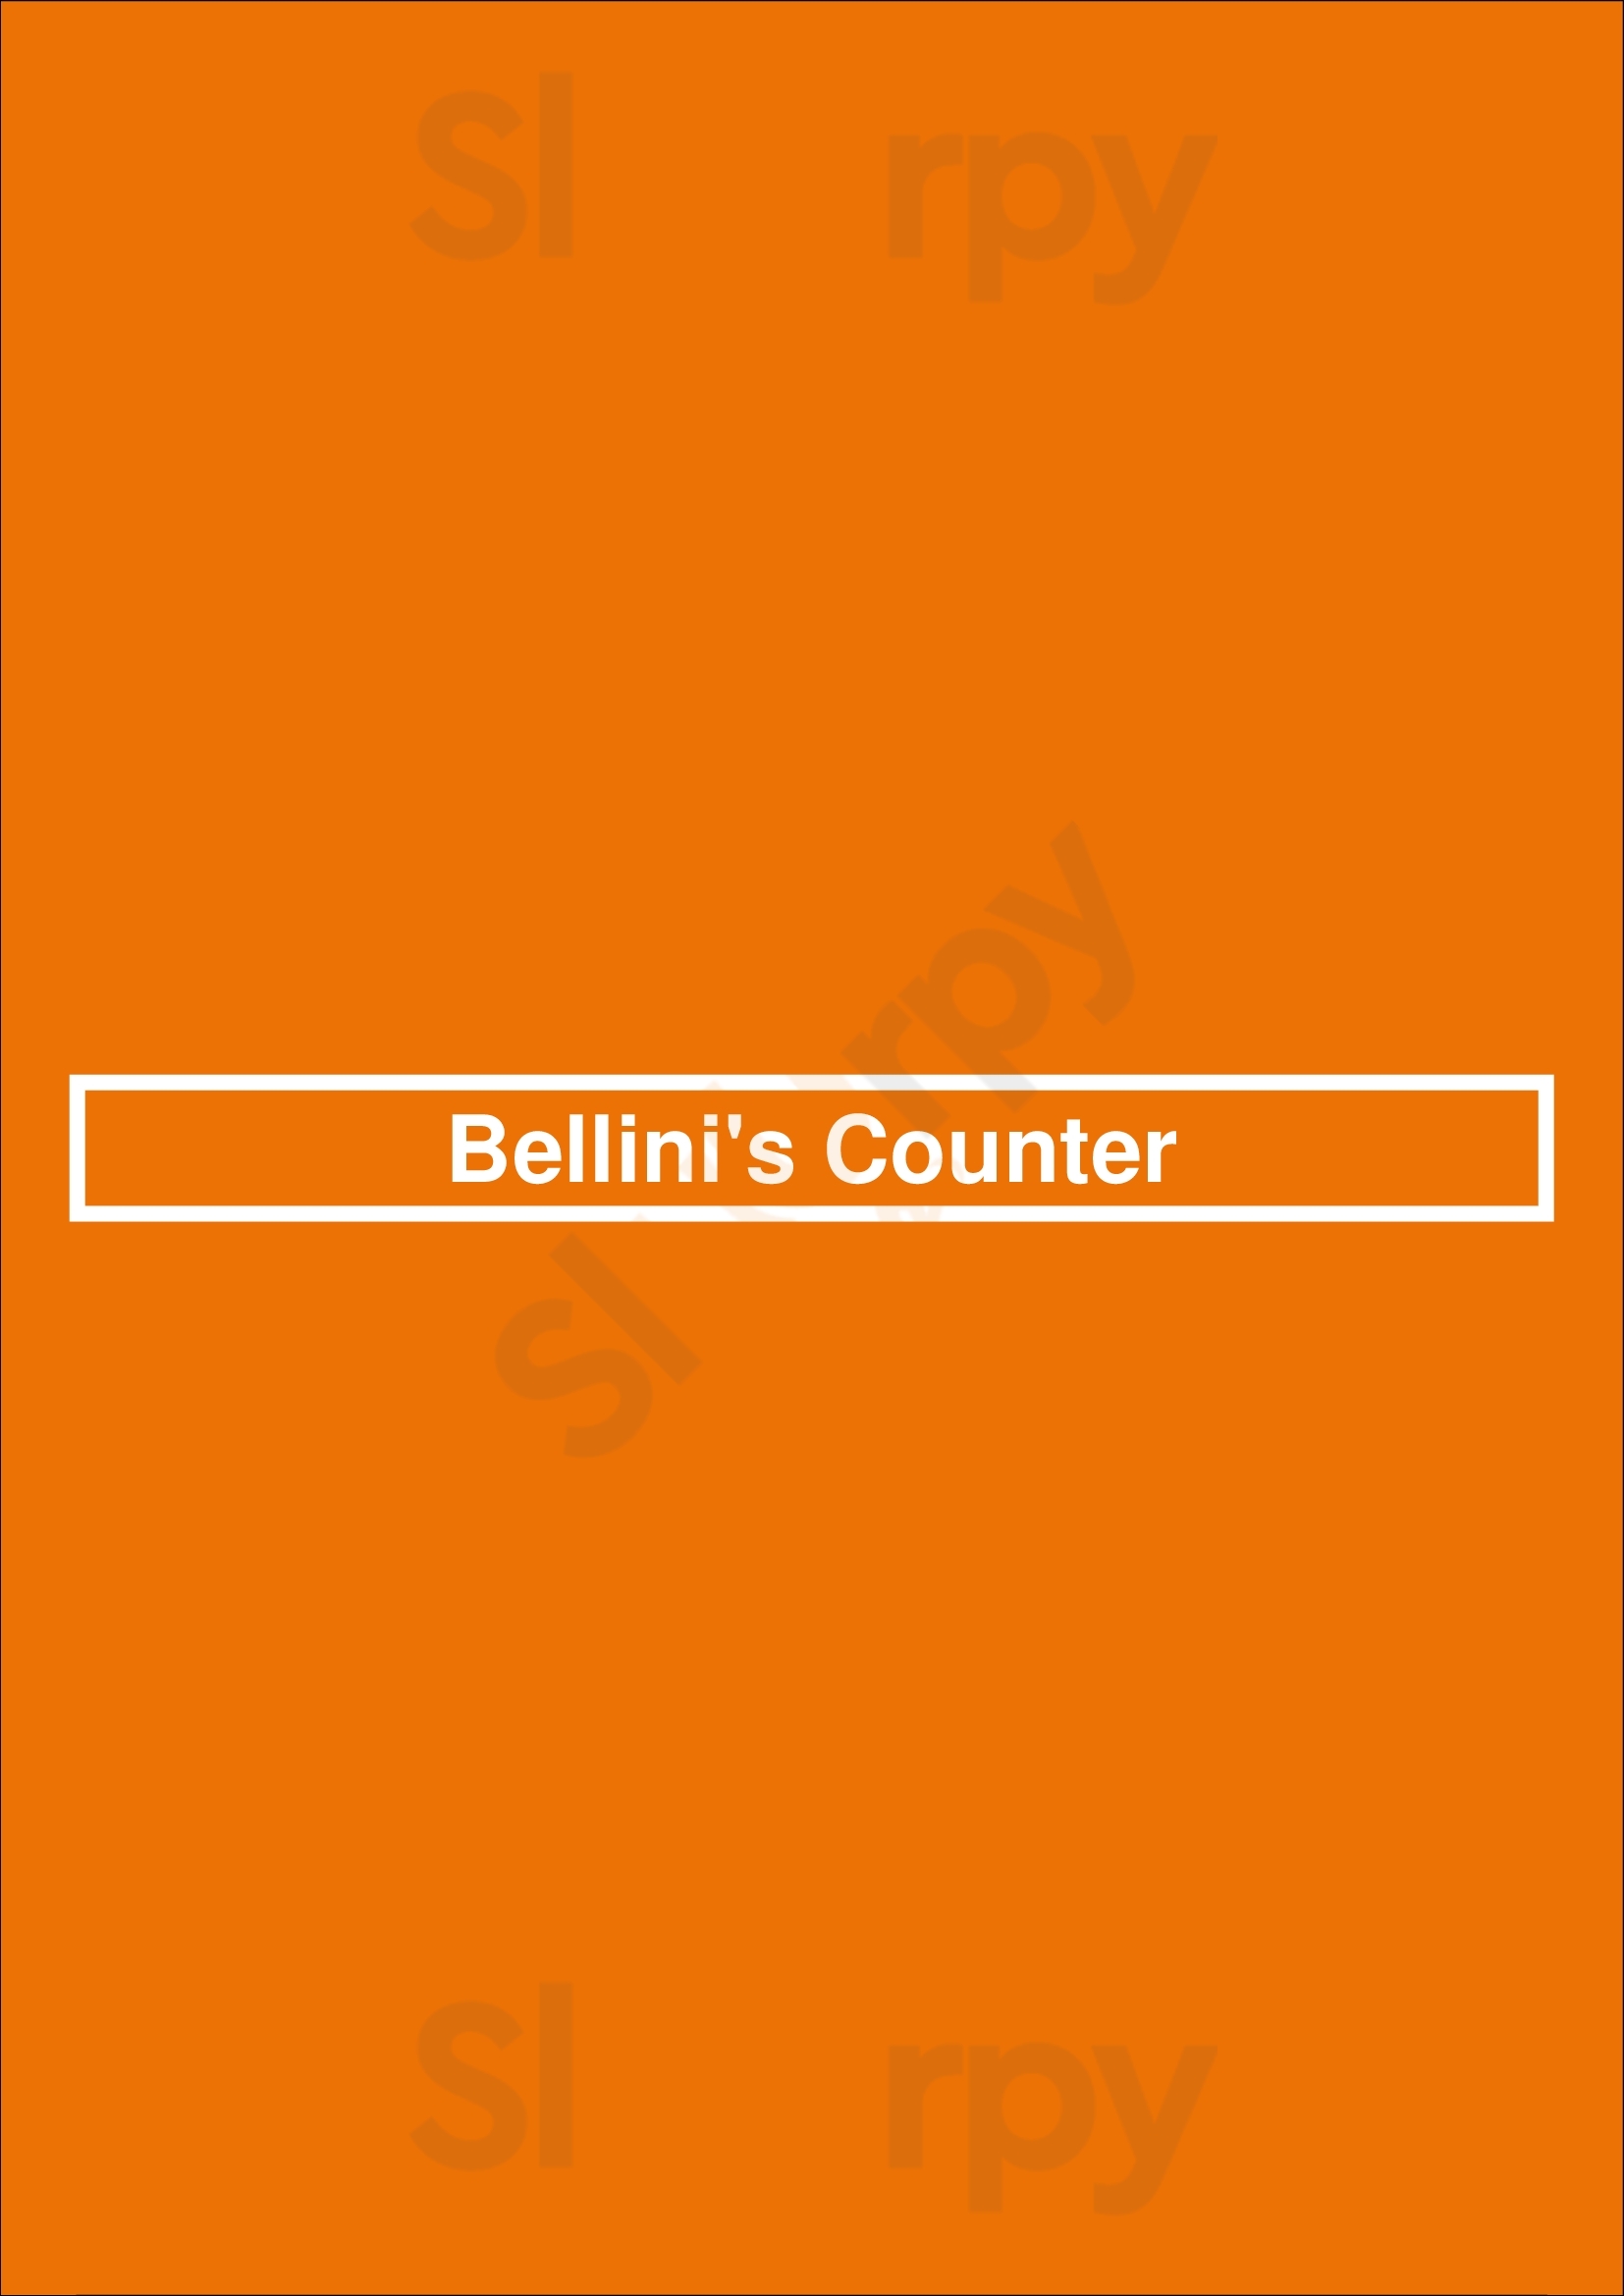 Bellini's Counter Albany Menu - 1